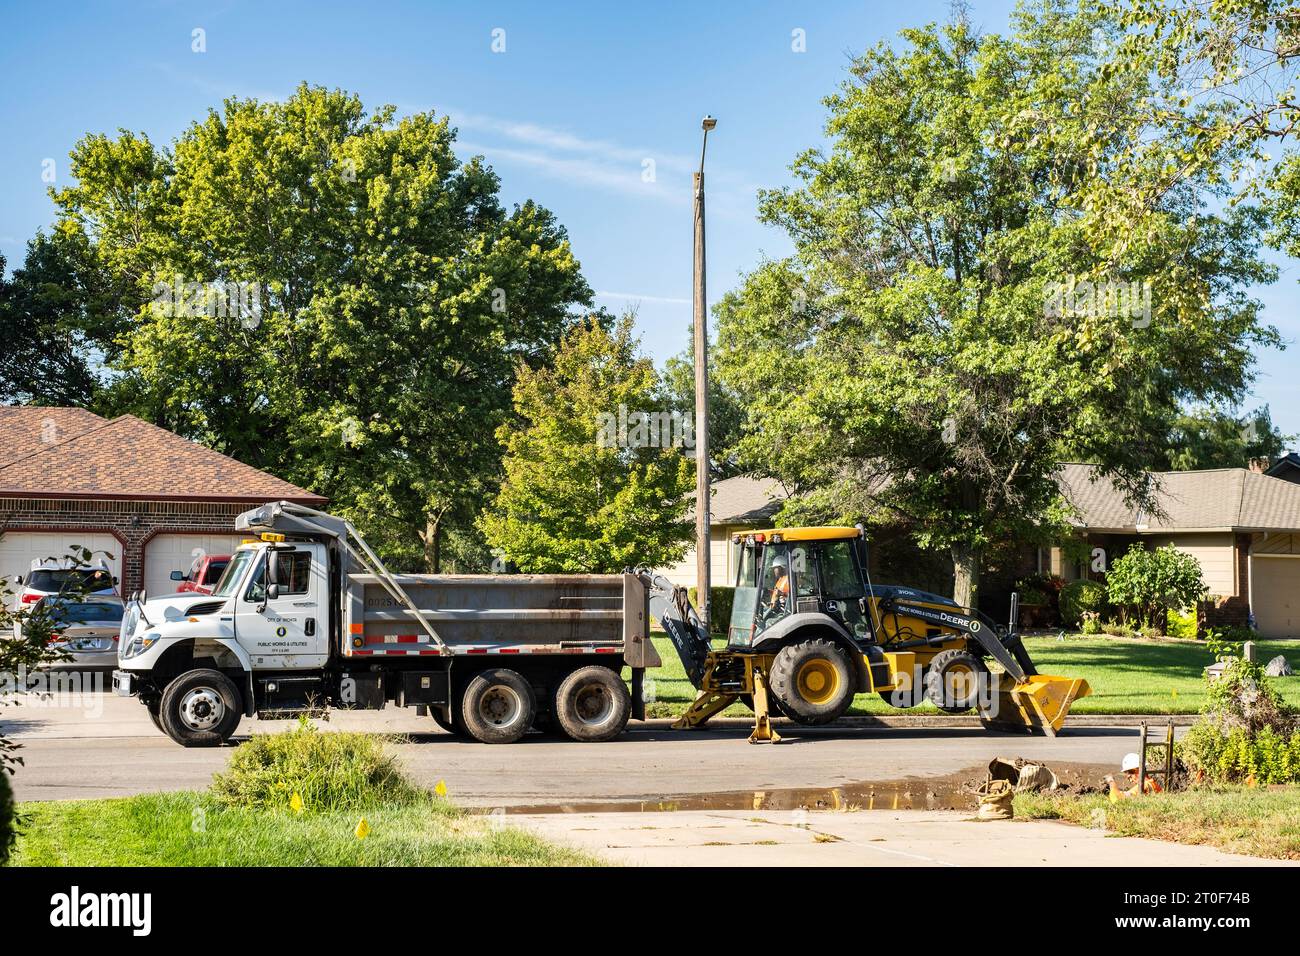 Ein Mitarbeiter der Wasserabteilung von Wichita Kansas gräbt eine Wasserleitung mit John Deere Baggerlader mit Bulldozer in einem Stadtviertel aus. Wichita, Kansas, USA. Stockfoto